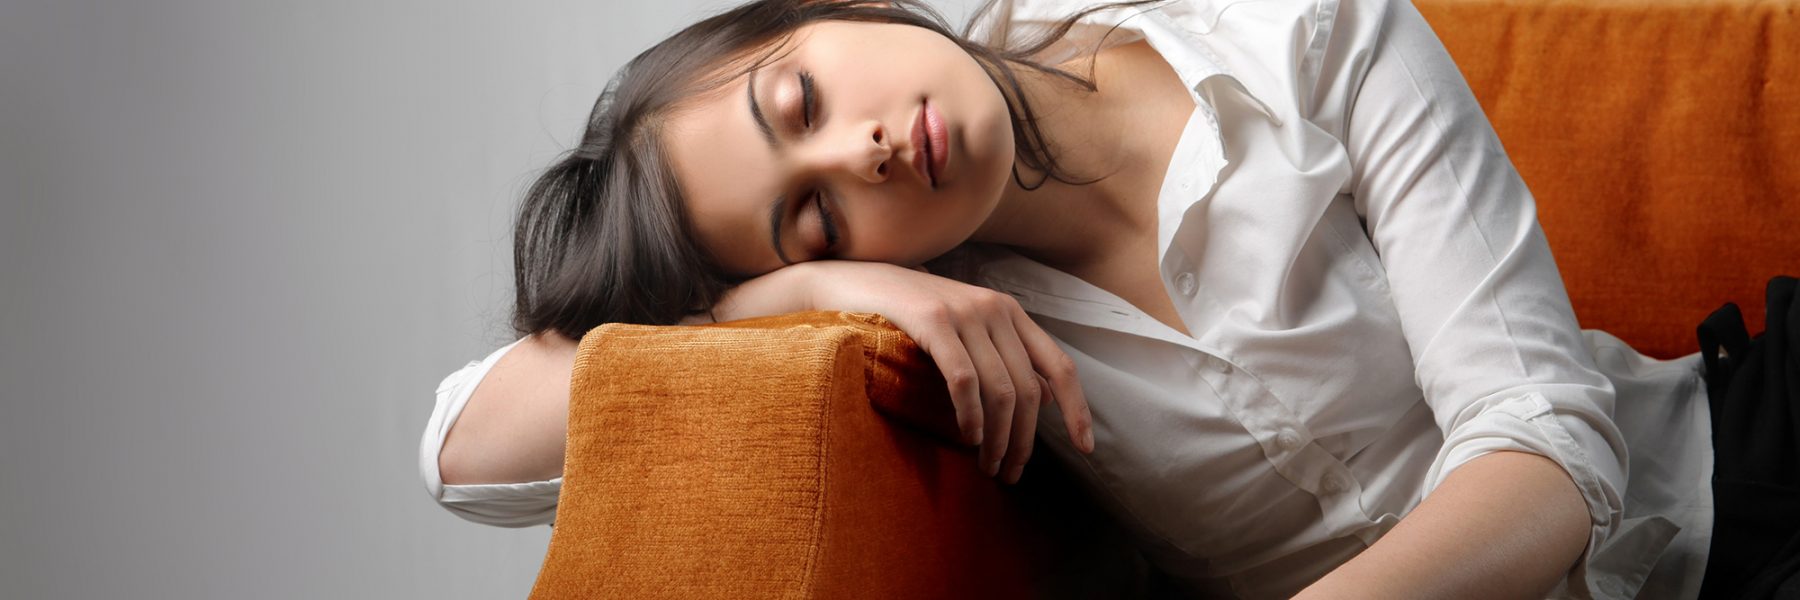 Les risques de la somnolence sur votre santé